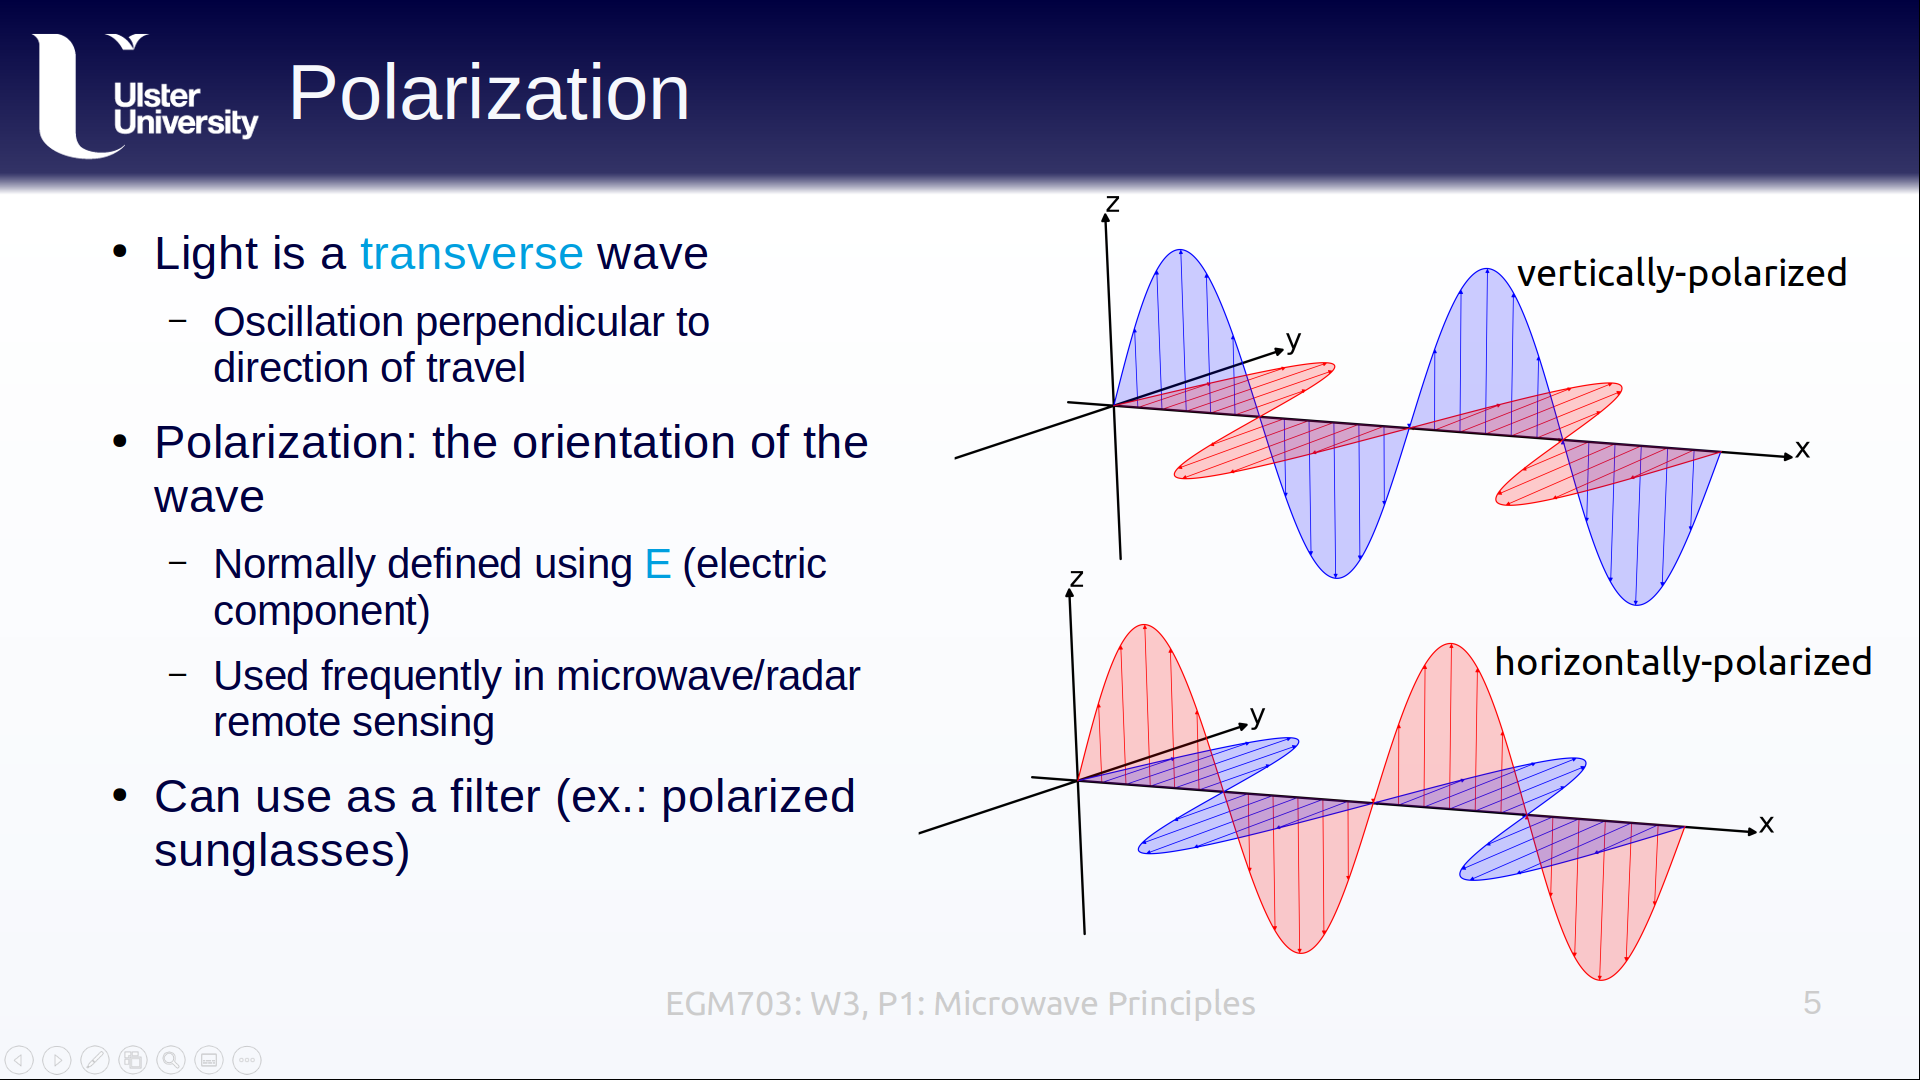 week 3 lectures on microwave remote sensing